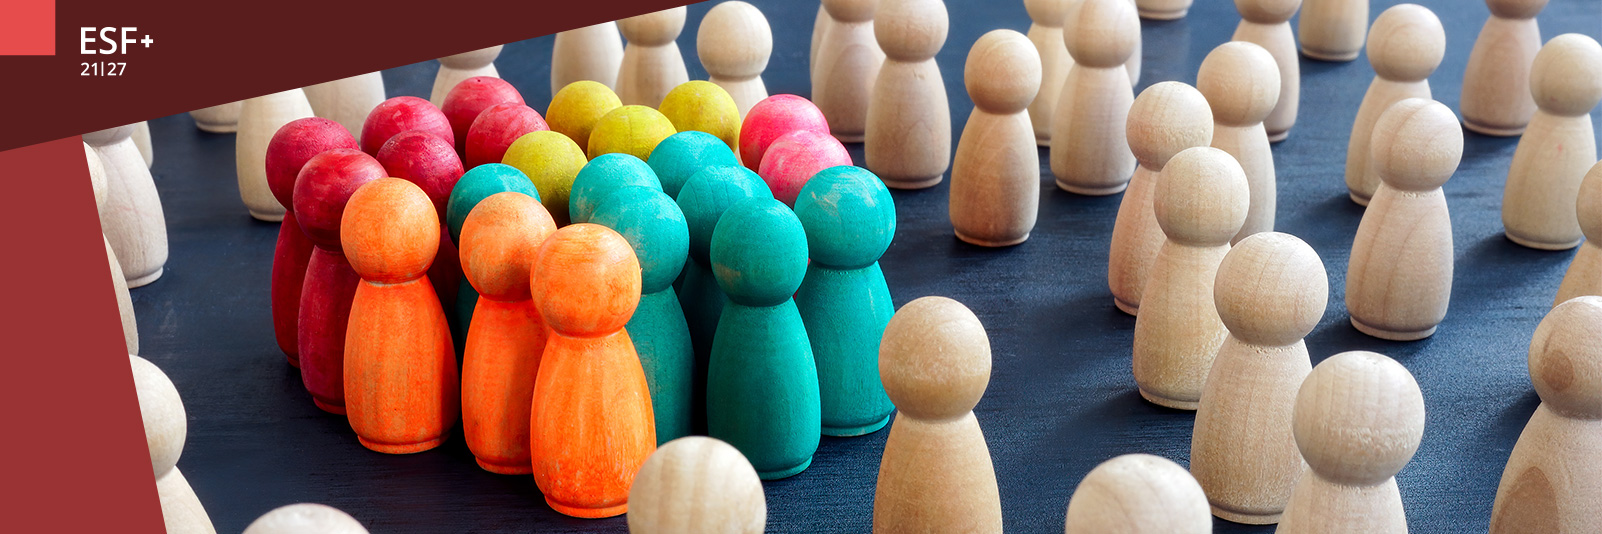 Eine größere Anzahl kleiner Holzspielfiguren, die meisten davon farblos, im Vordergrund eine eng zusammenstehende Gruppe bunter Holzspielfiguren.